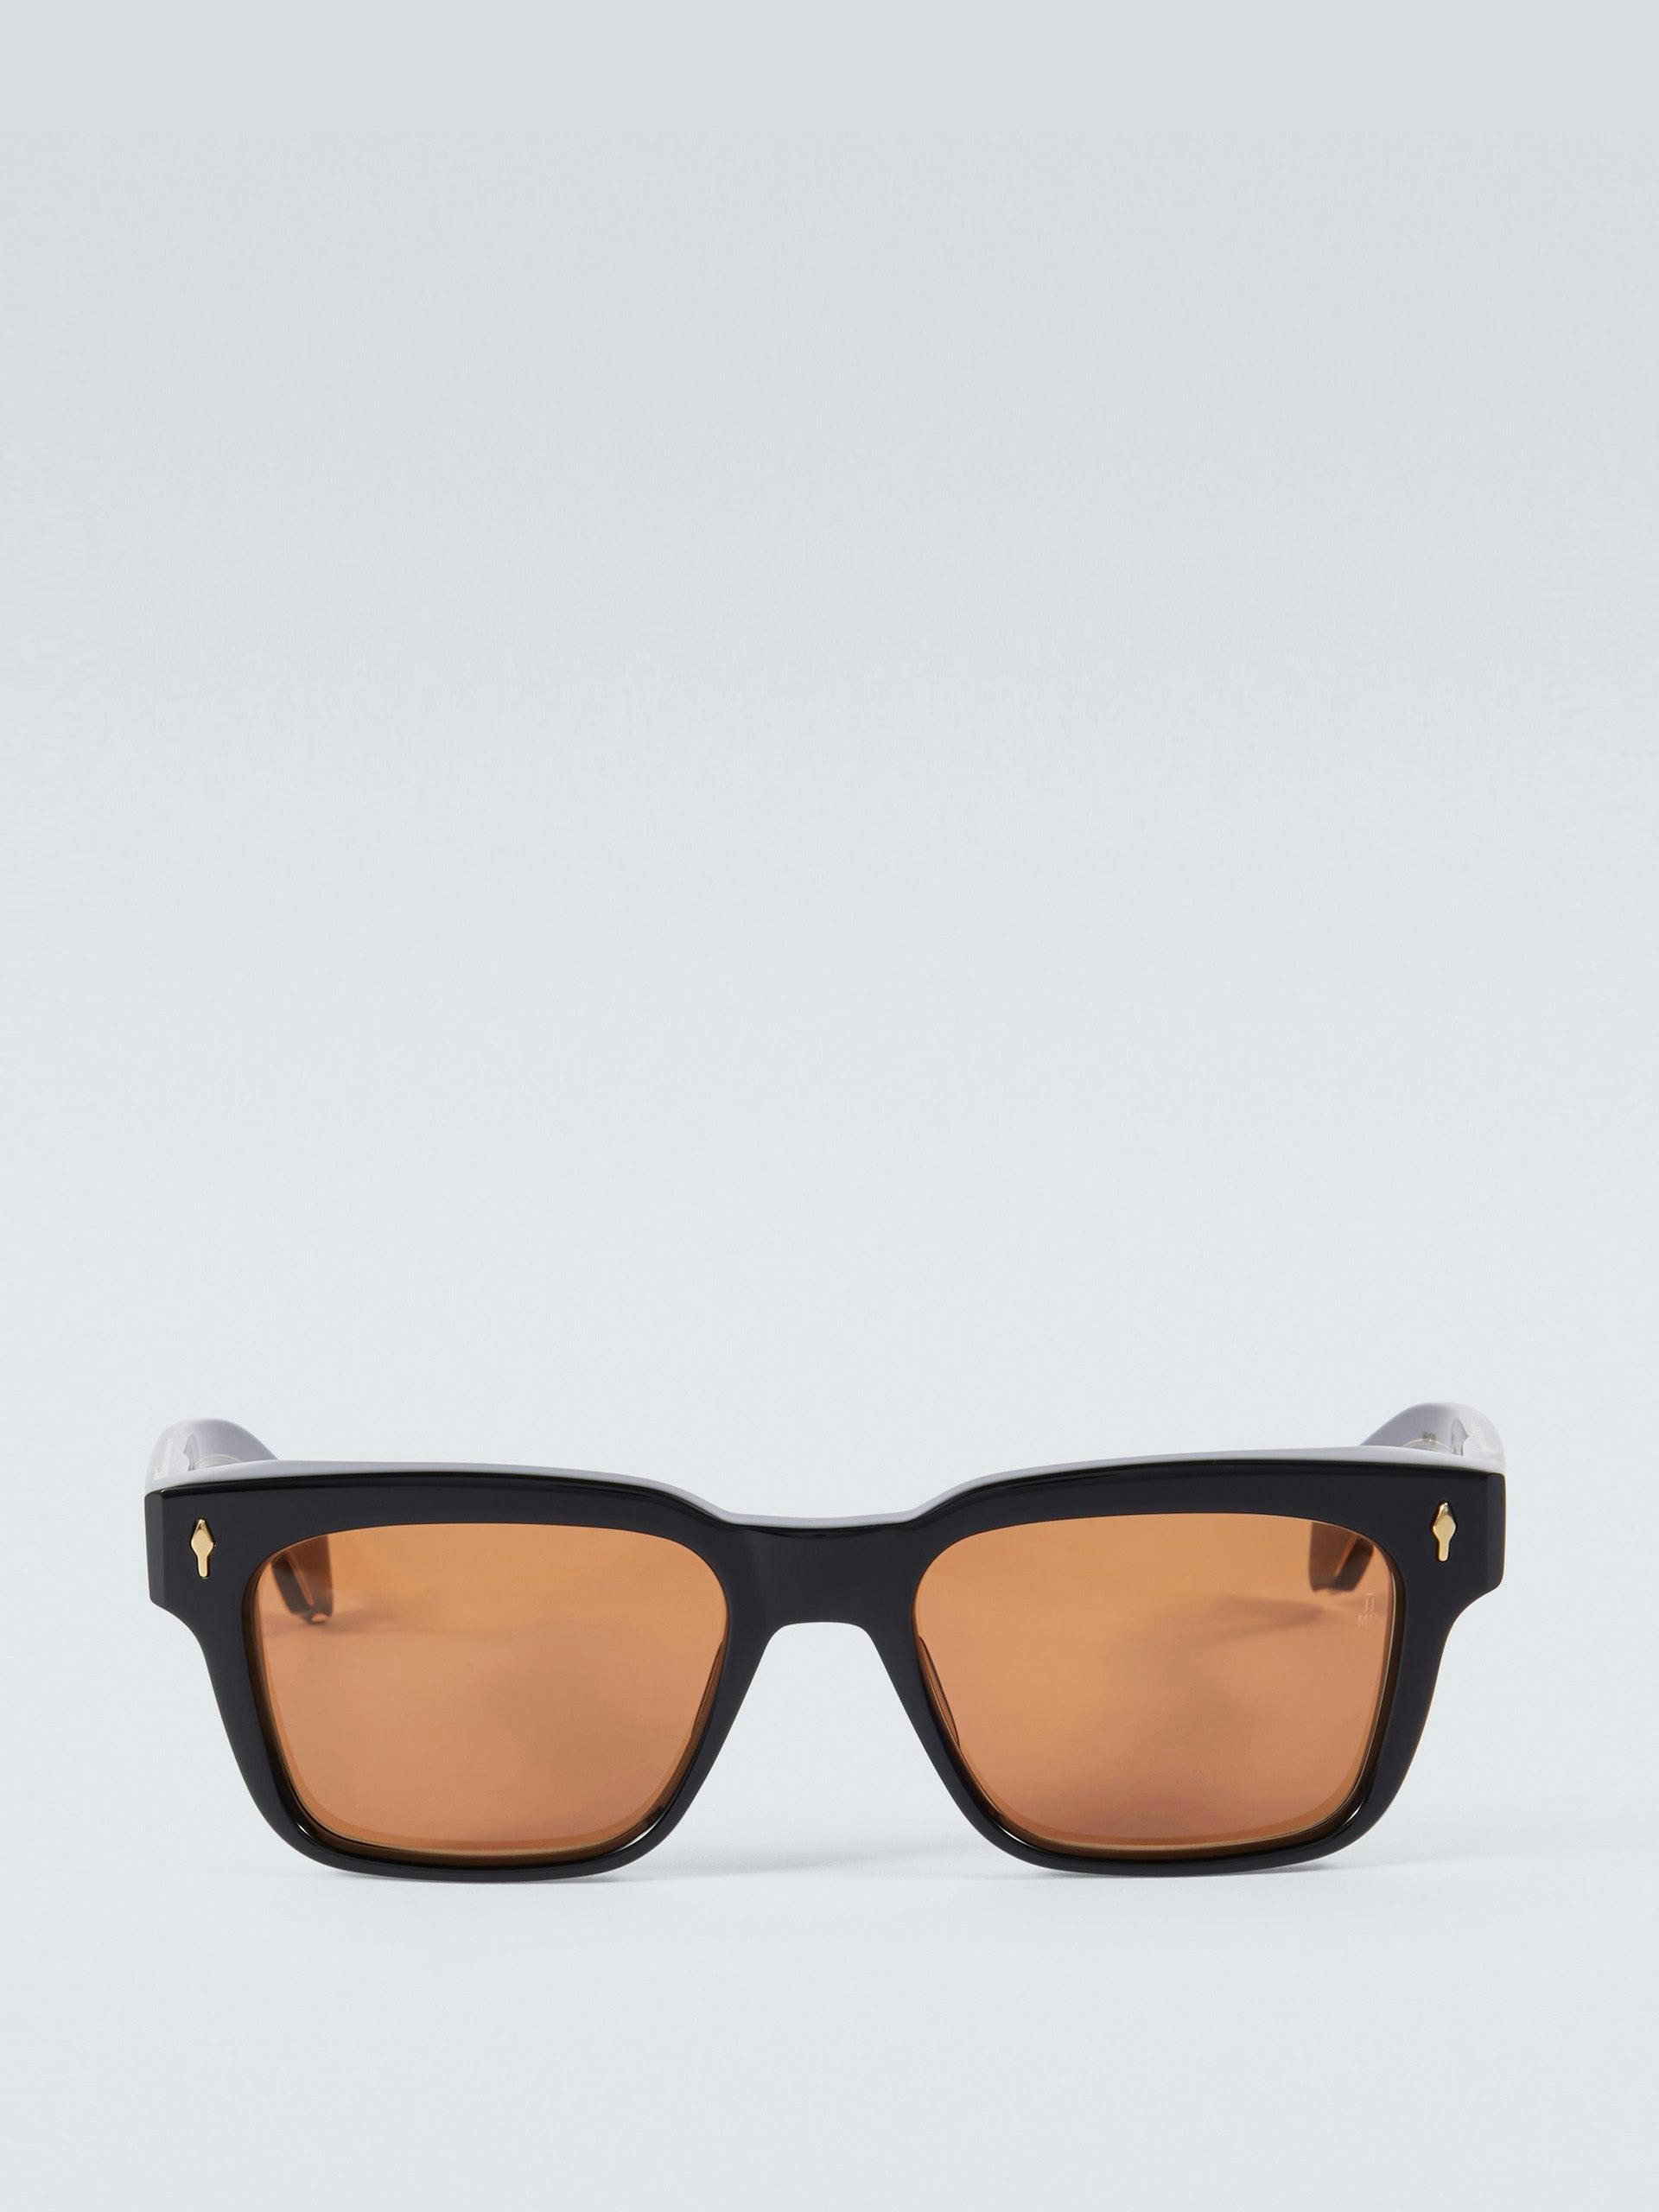 Molino 55 rectangular sunglasses